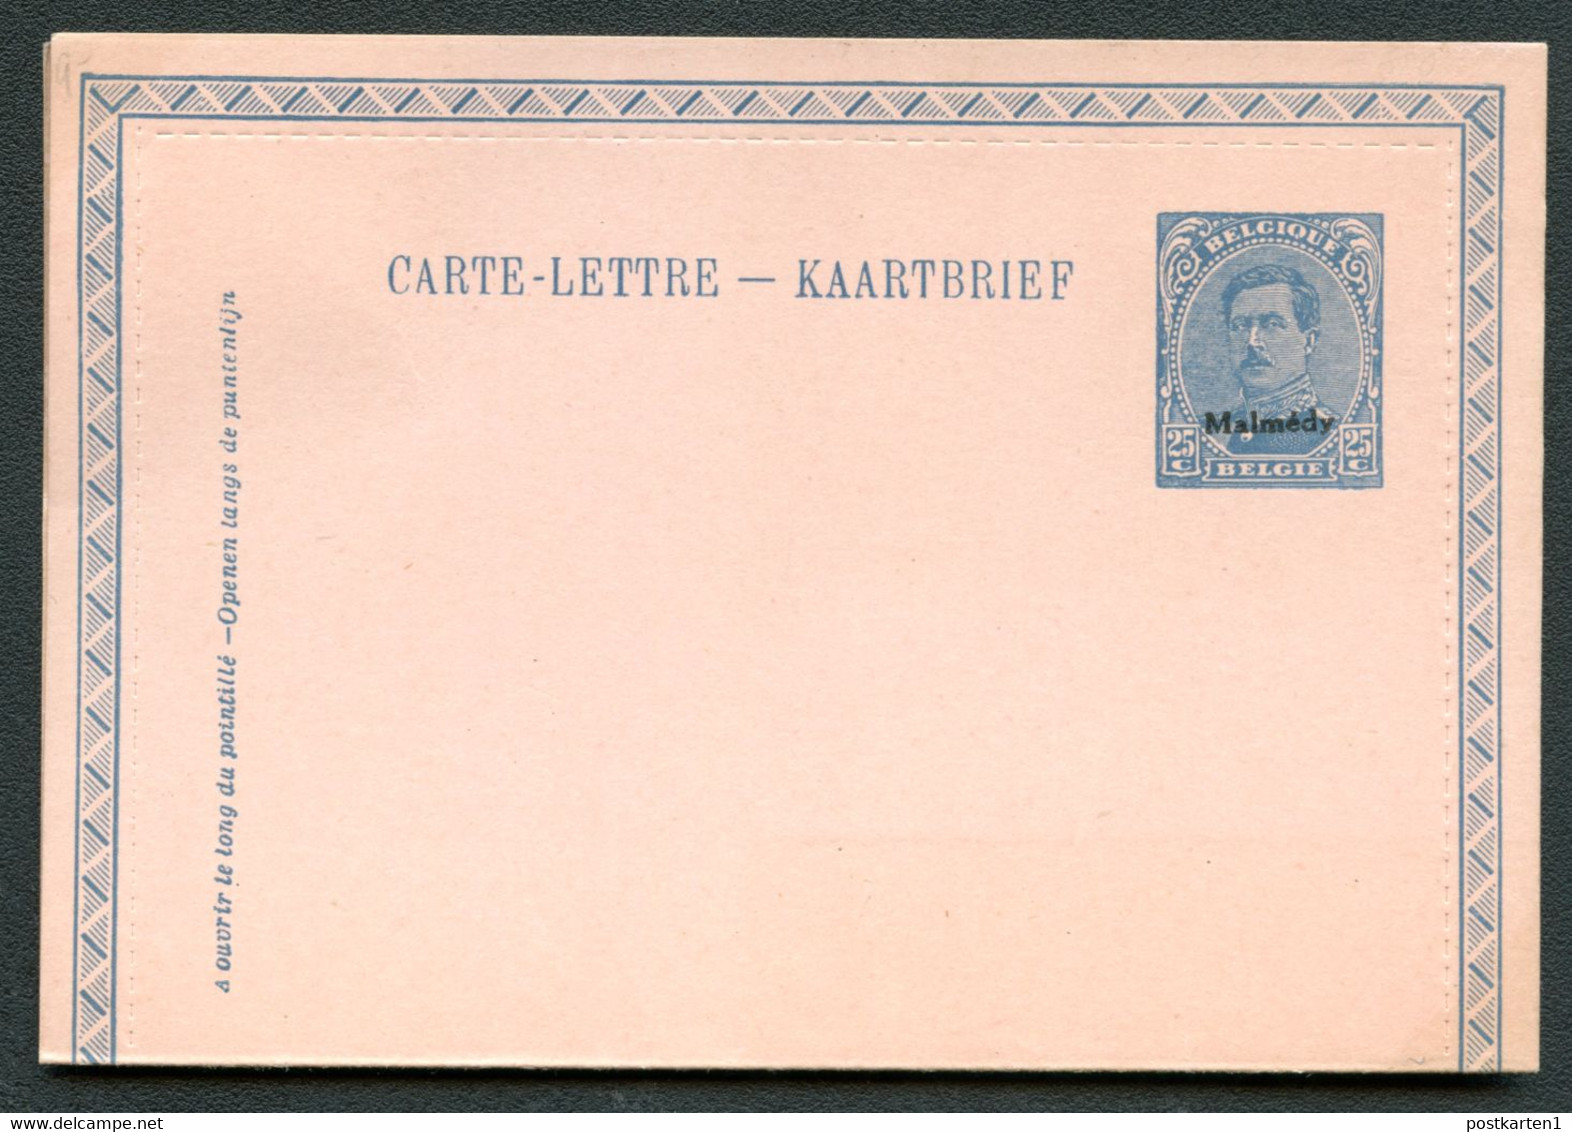 MALMÉDY Carte-lettre KB3 1920 Cat. 20.00 € - Eupen & Malmedy